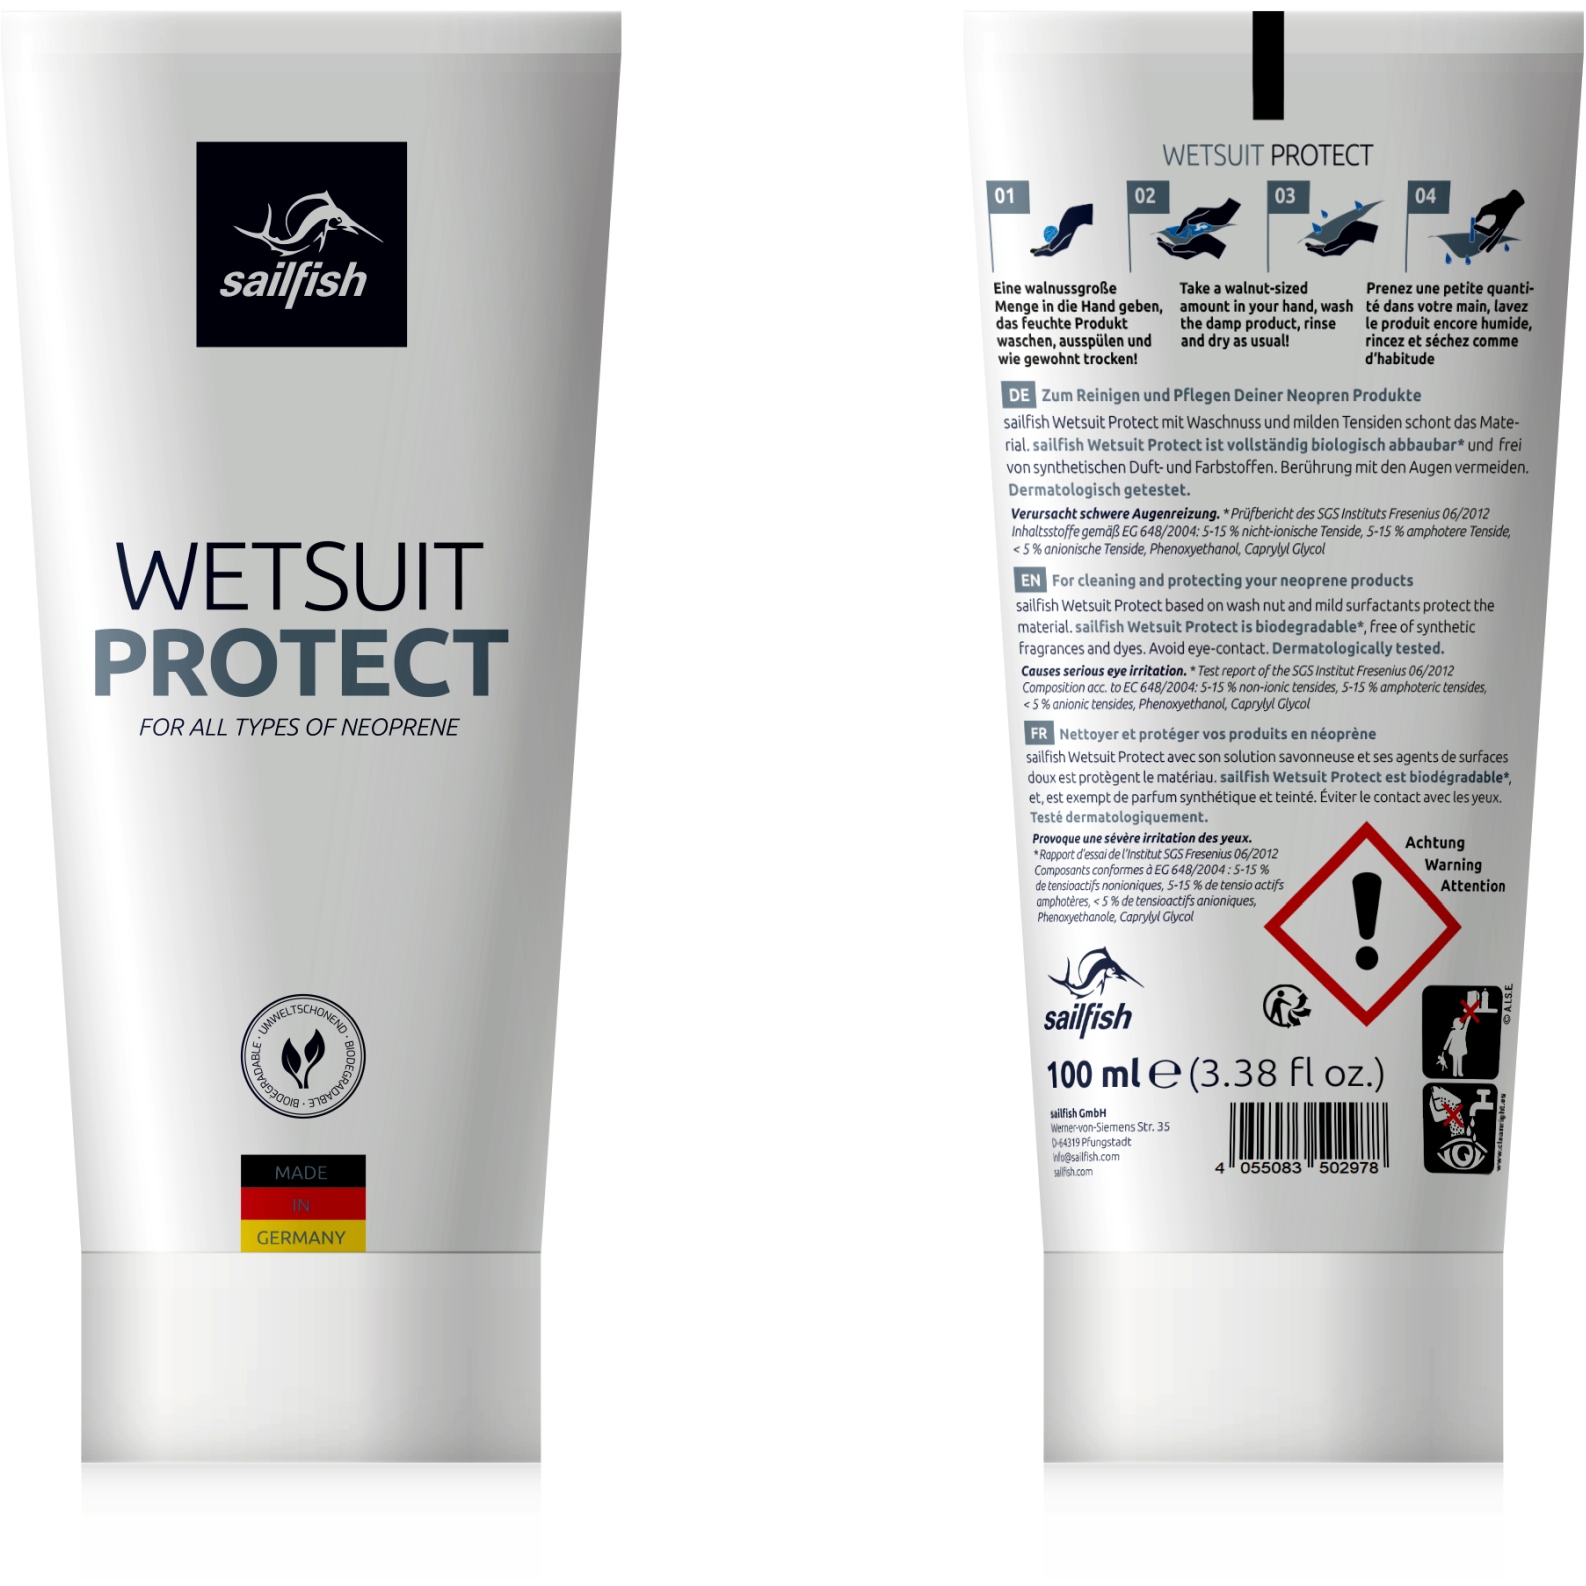 Immagine prodotto da sailfish Detergente per Neoprene - Wetsuit Protect - transparent